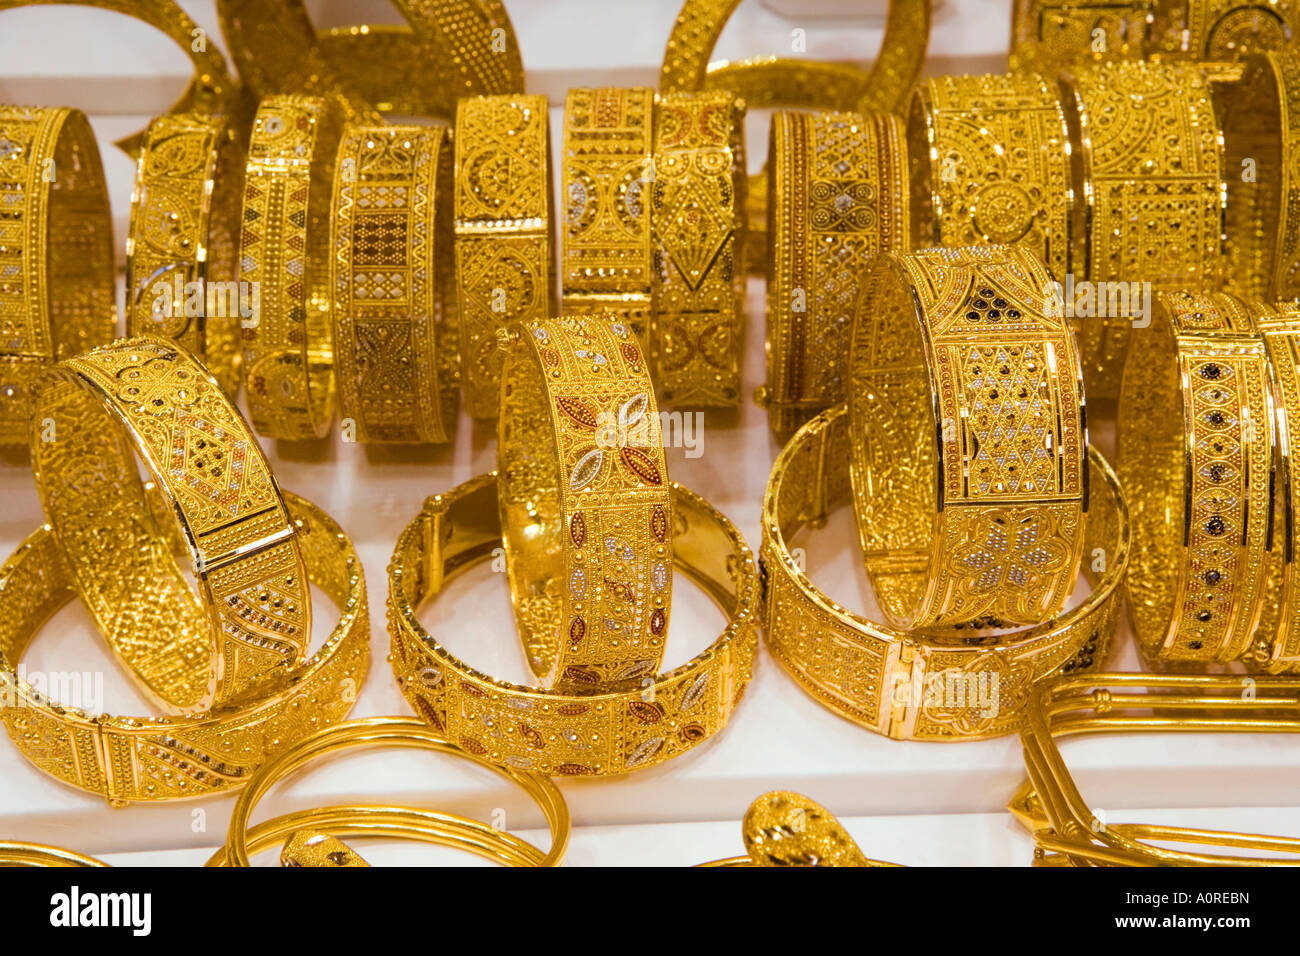 Der Goldmarkt Deira Dubai Vereinigte Arabische Emirate Naher Osten Stockfoto